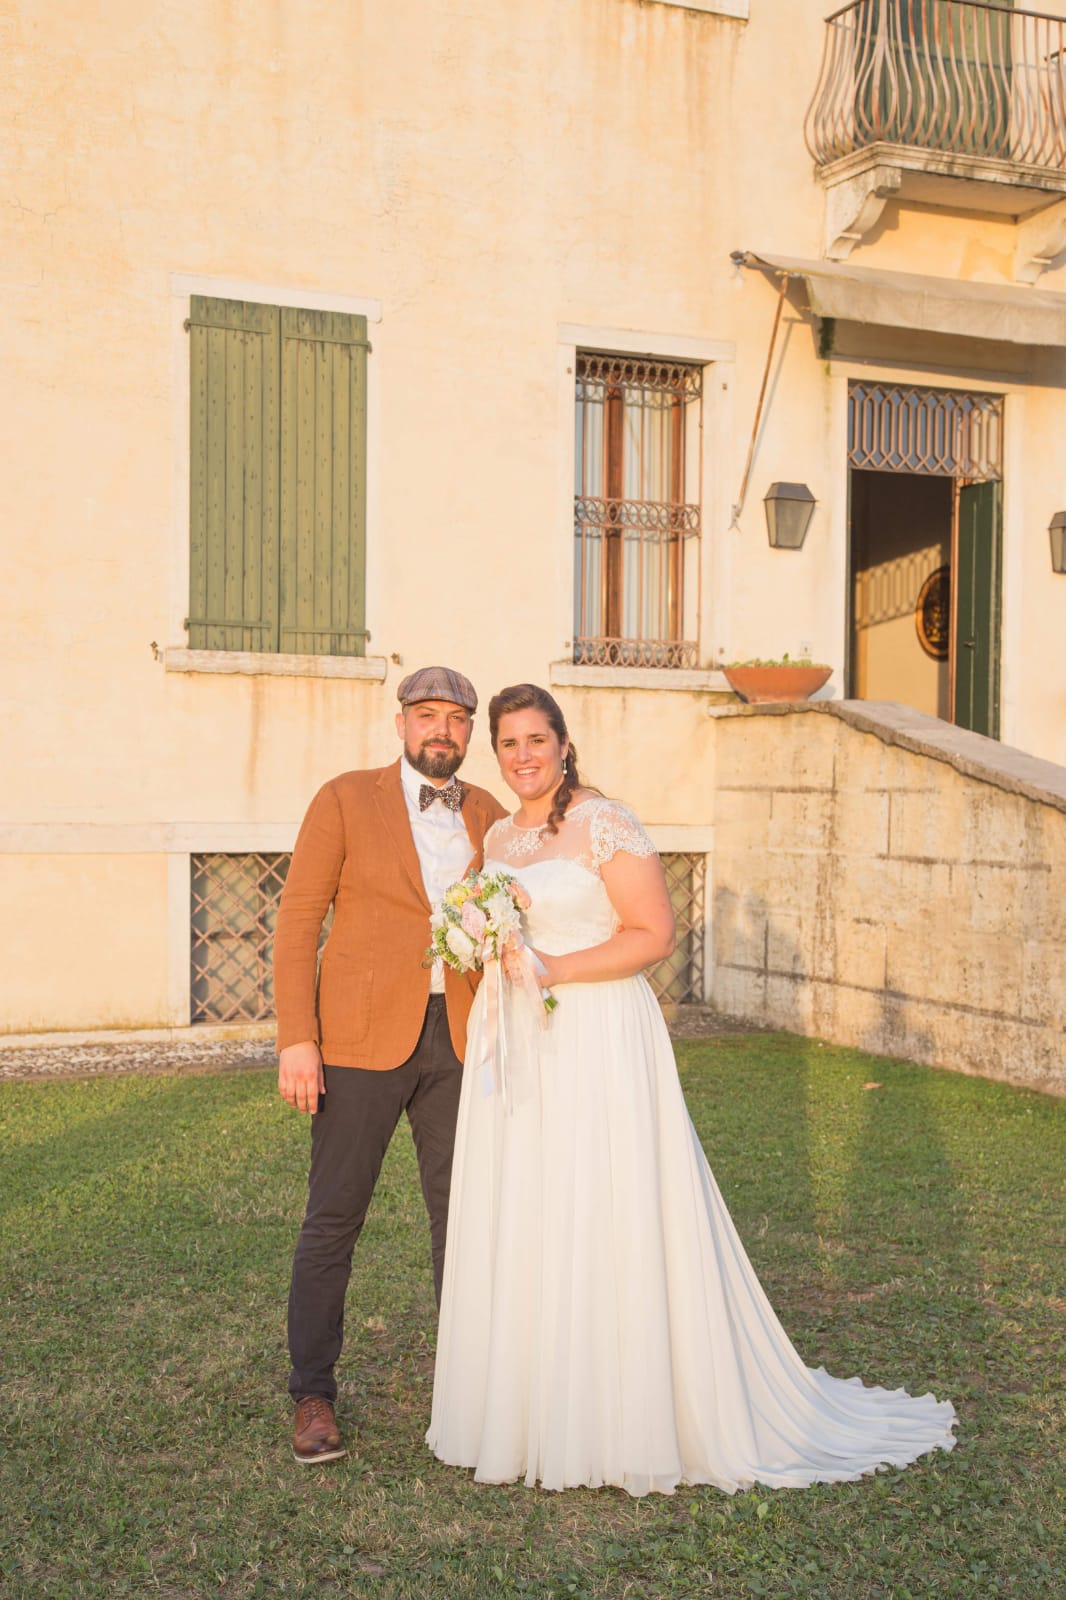 abito da sposa su misura creato da elena spose per anna giugno 2019